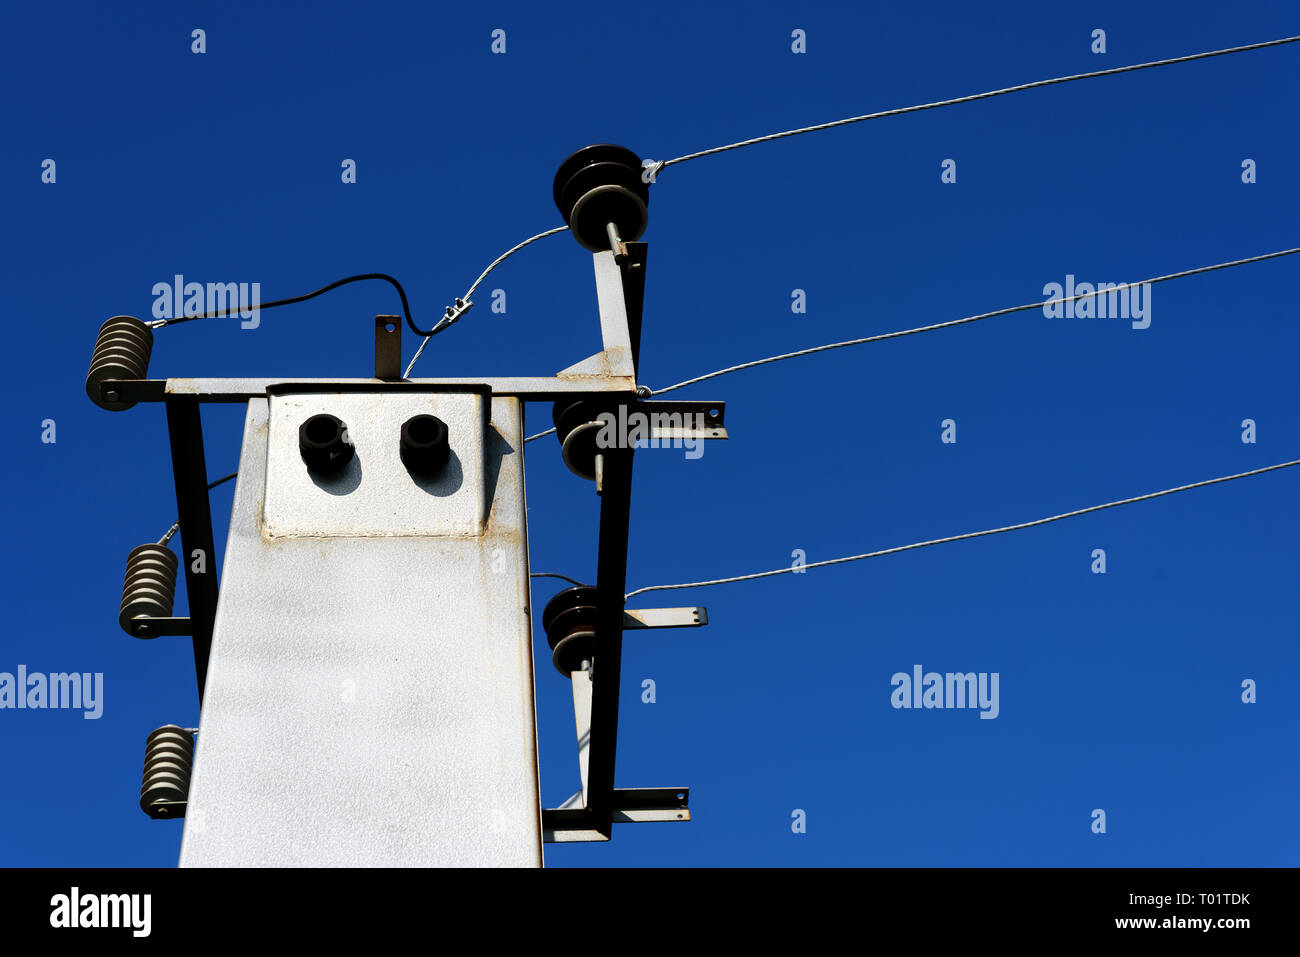 Immagine di una sottostazione elettrica e linee di alimentazione impostato contro un cielo blu all'aperto durante il giorno Foto Stock